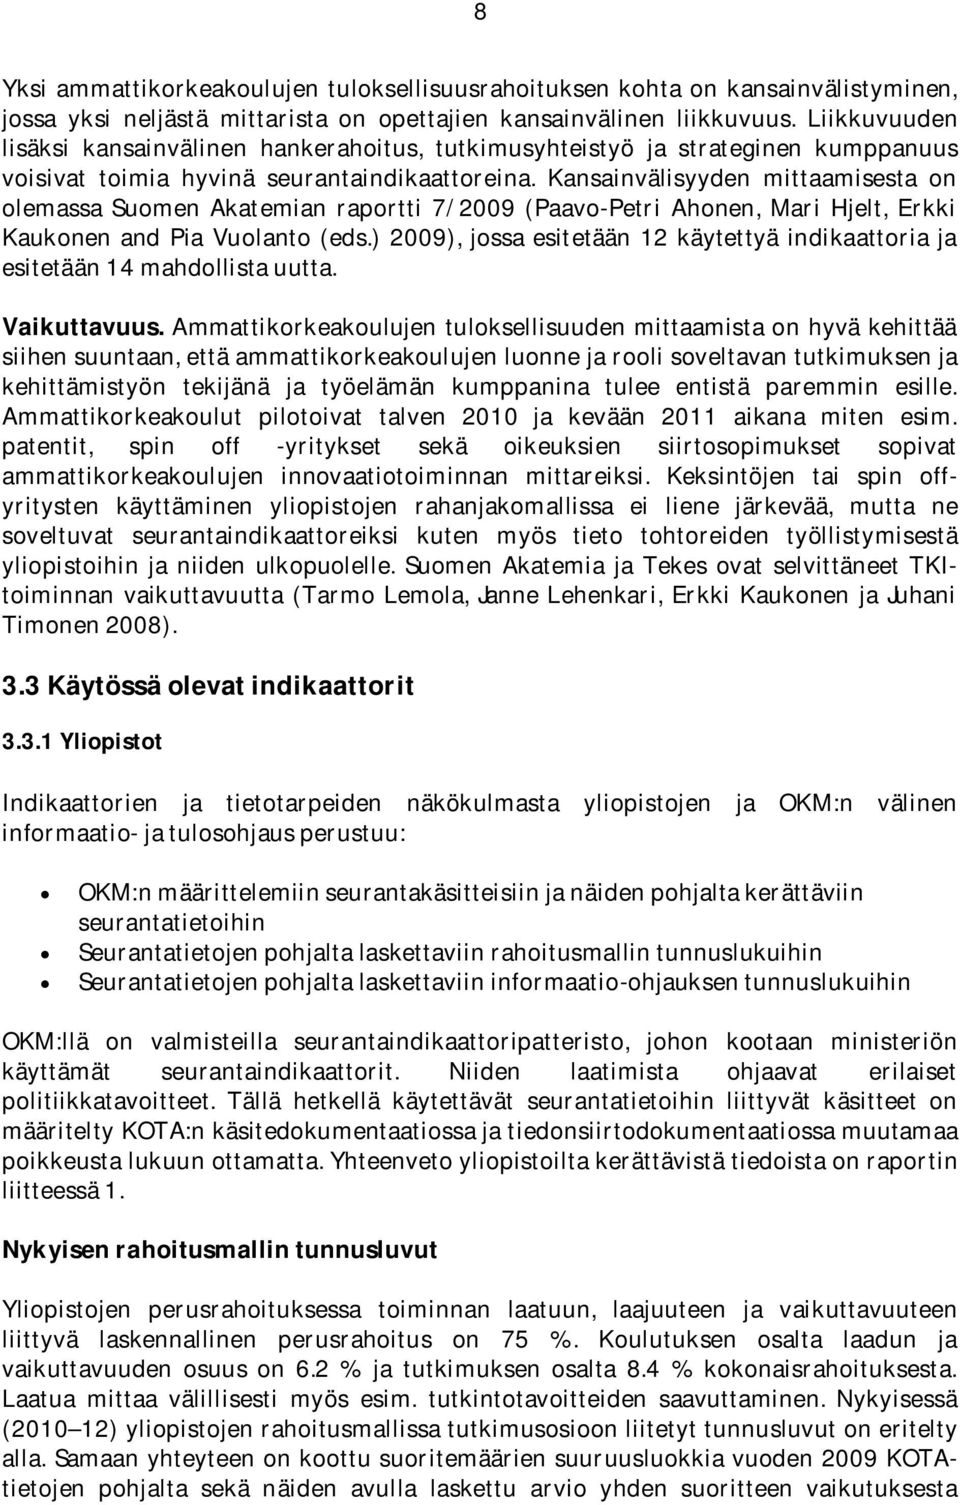 Kansainvälisyyden mittaamisesta on olemassa Suomen Akatemian raportti 7/2009 (Paavo-Petri Ahonen, Mari Hjelt, Erkki Kaukonen and Pia Vuolanto (eds.